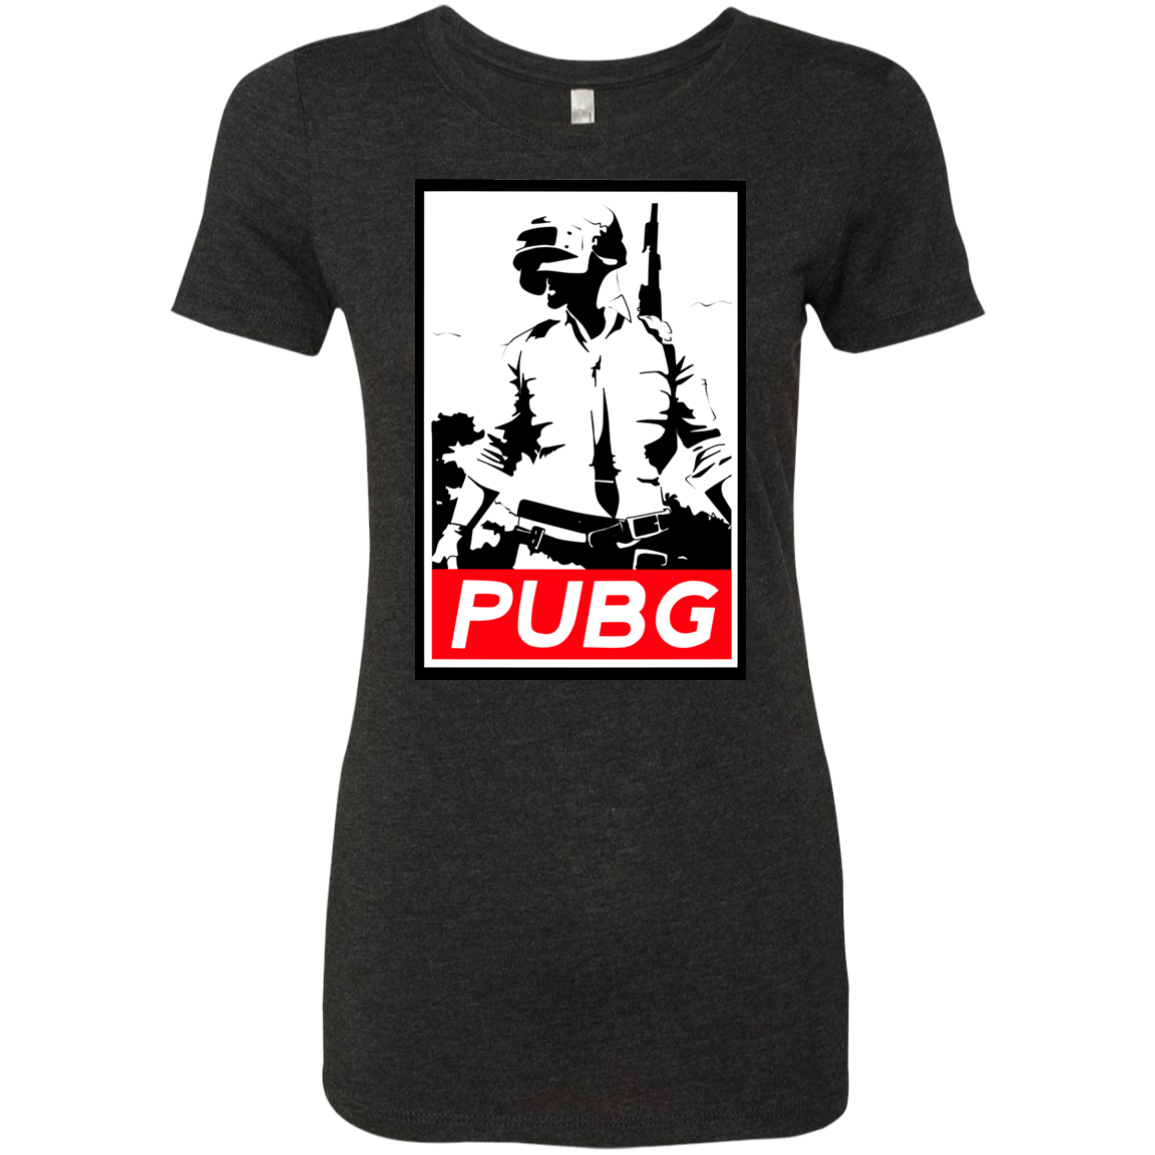 PUBG Women's Triblend T-Shirt